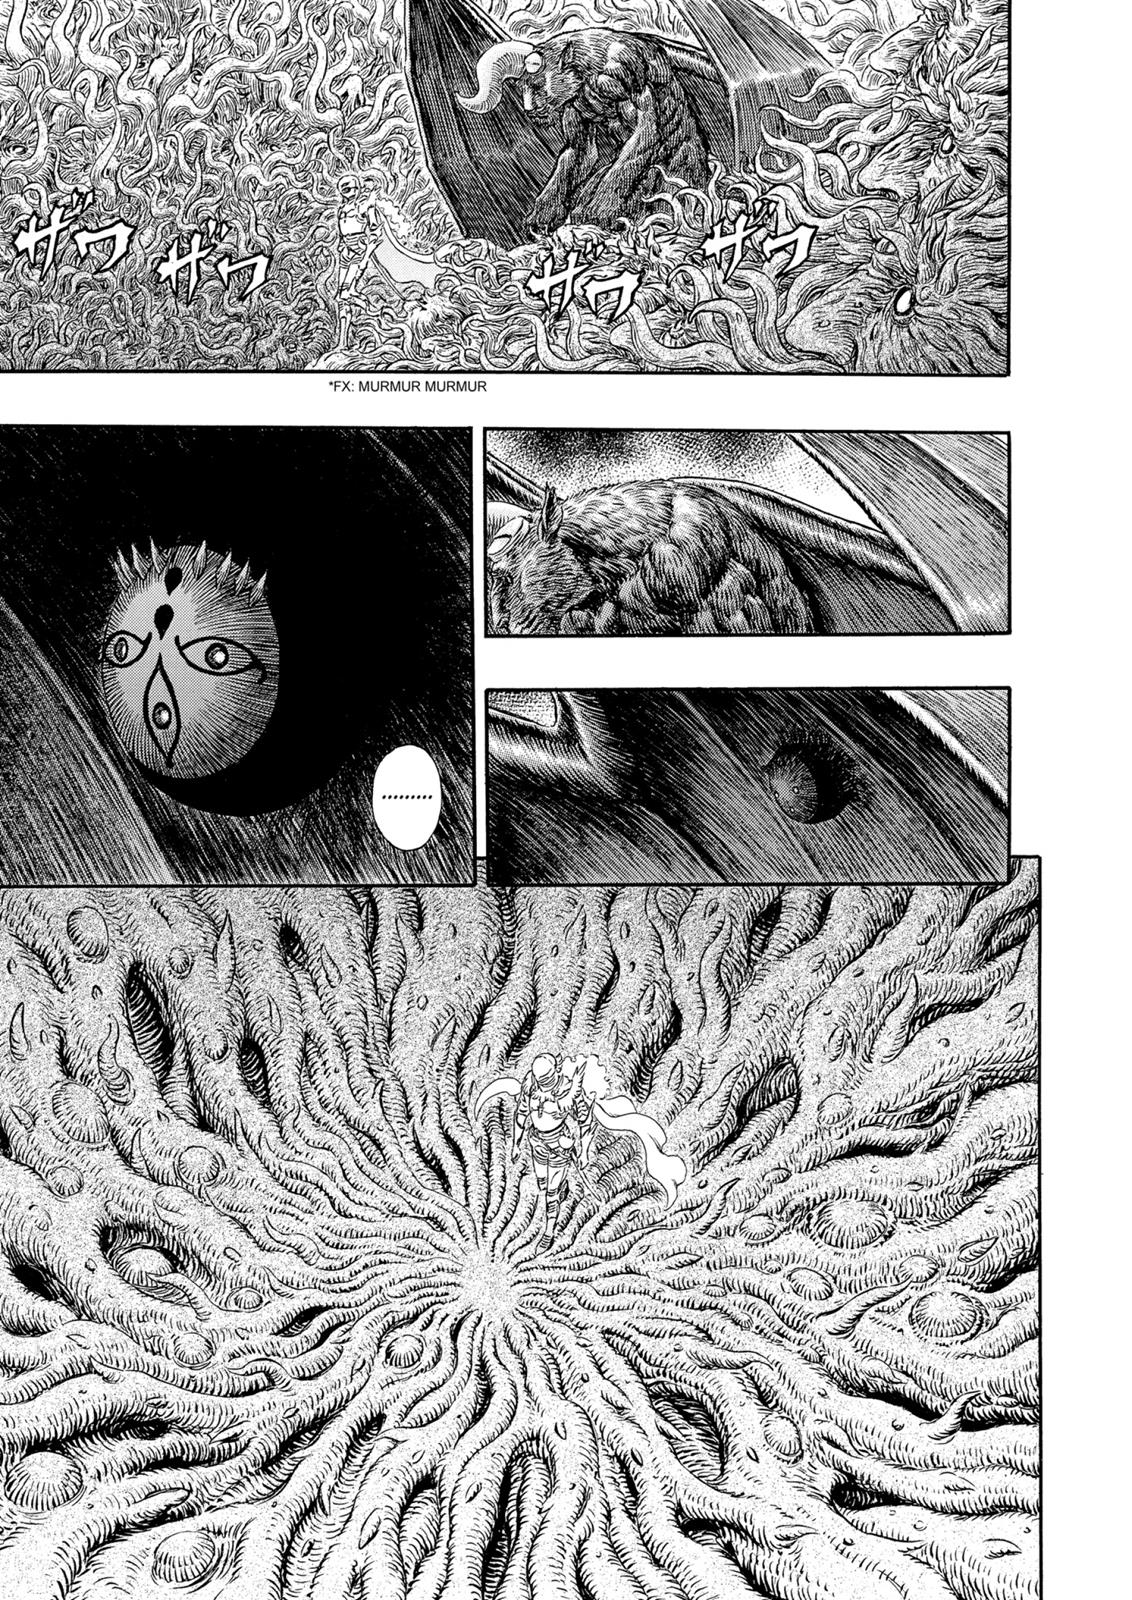 Berserk Manga Chapter 302 image 14